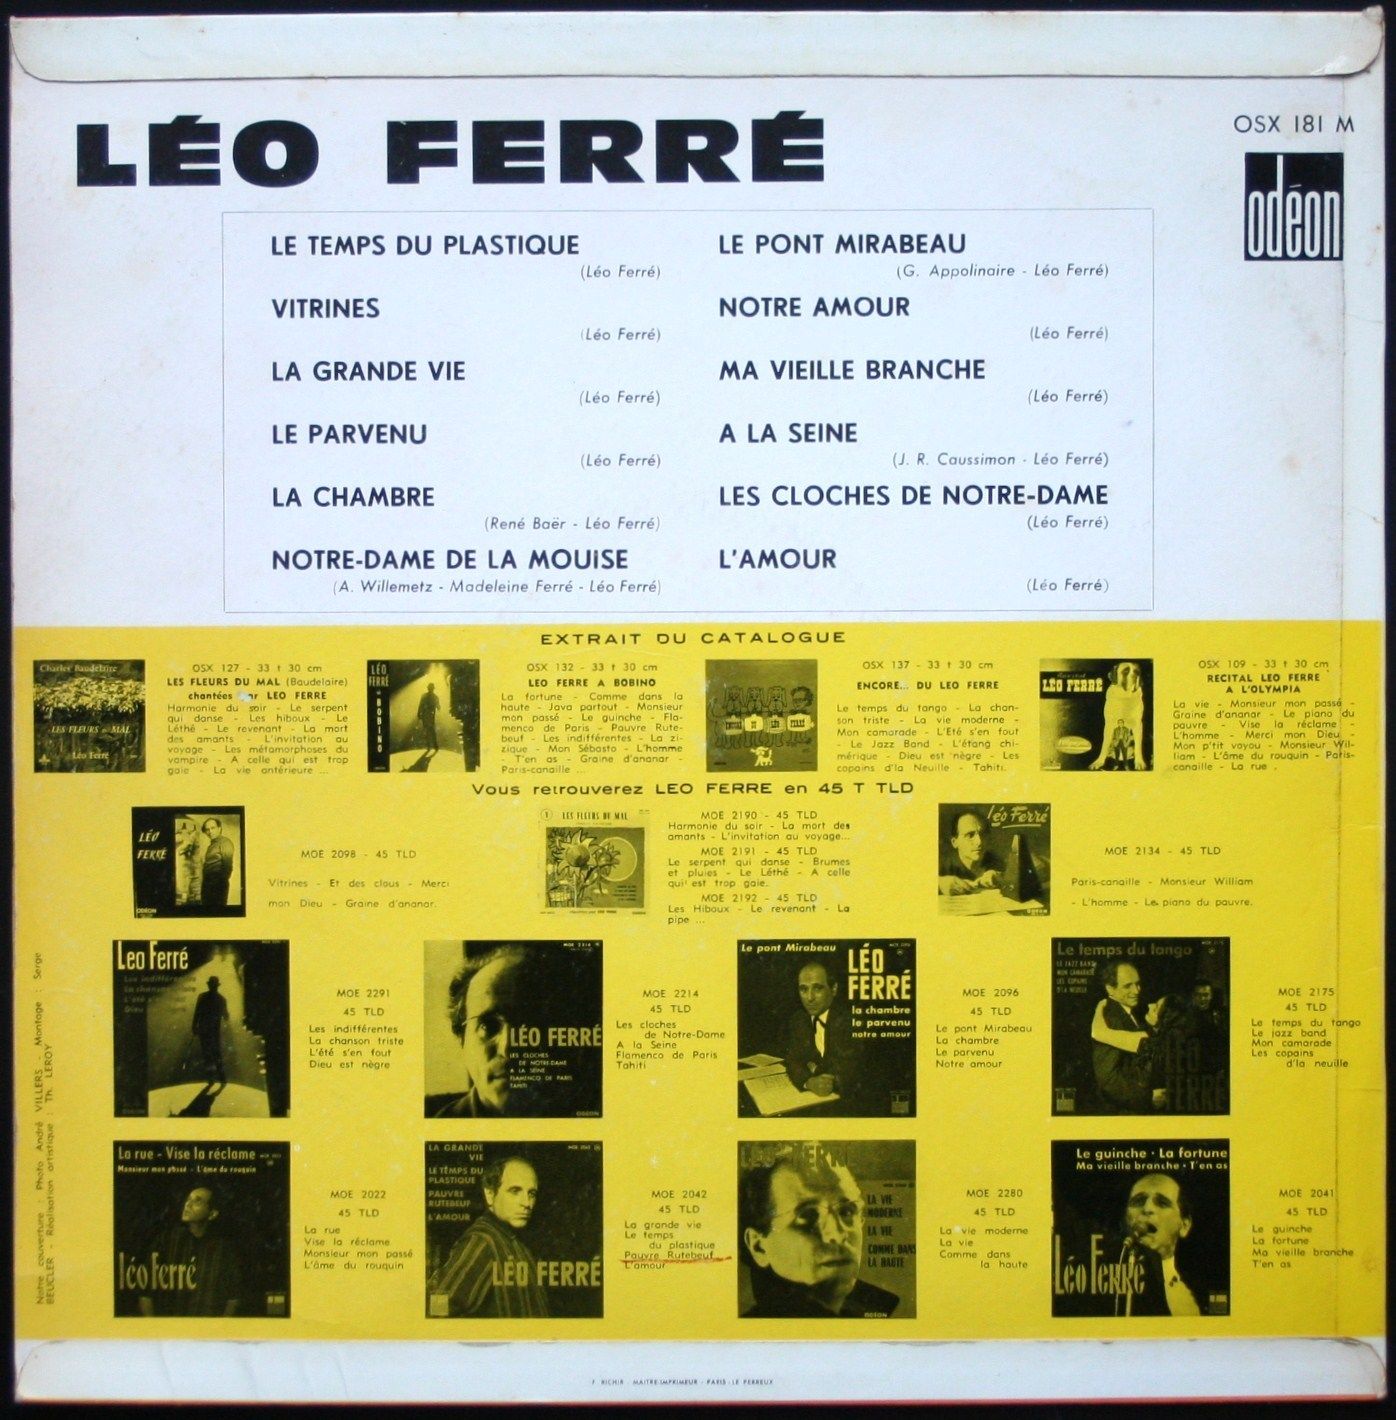 Léo Ferré - Odéon OSX 181